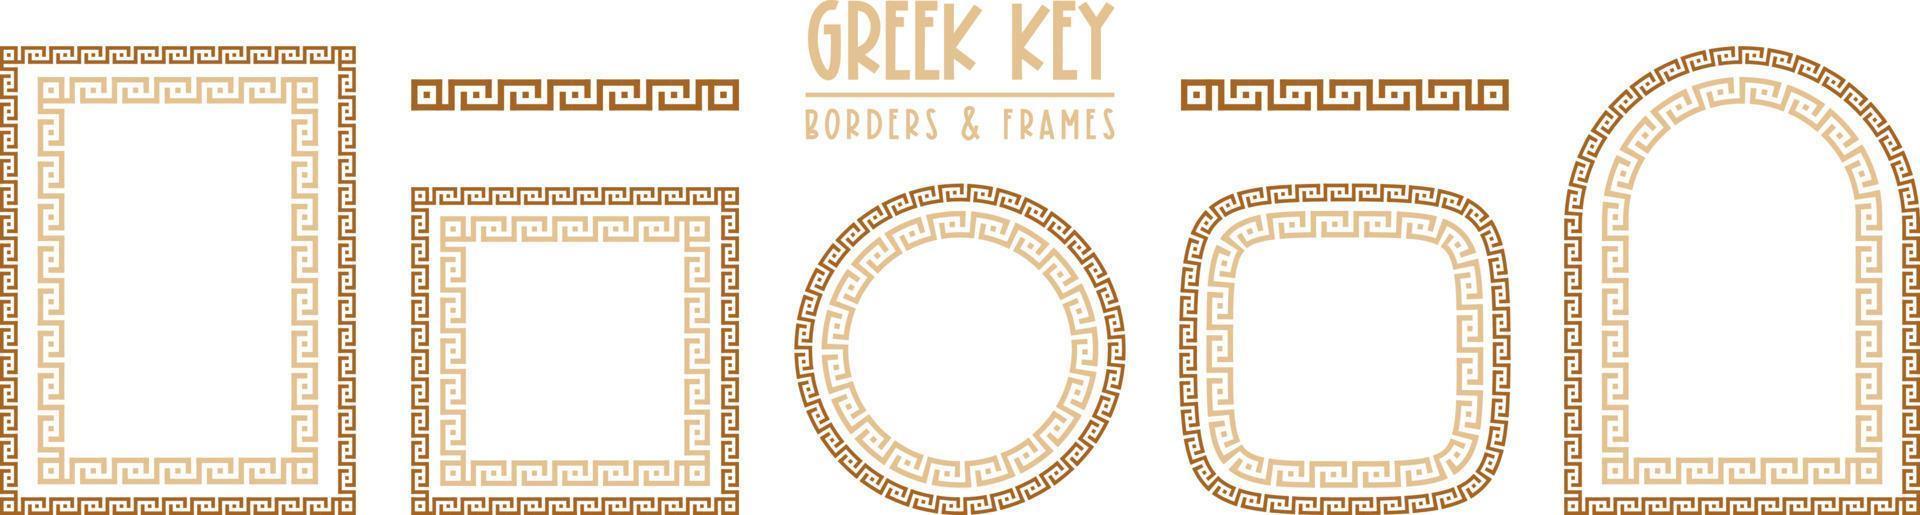 collezione di cornici e bordi chiave greci. antico meandro decorativo vettore